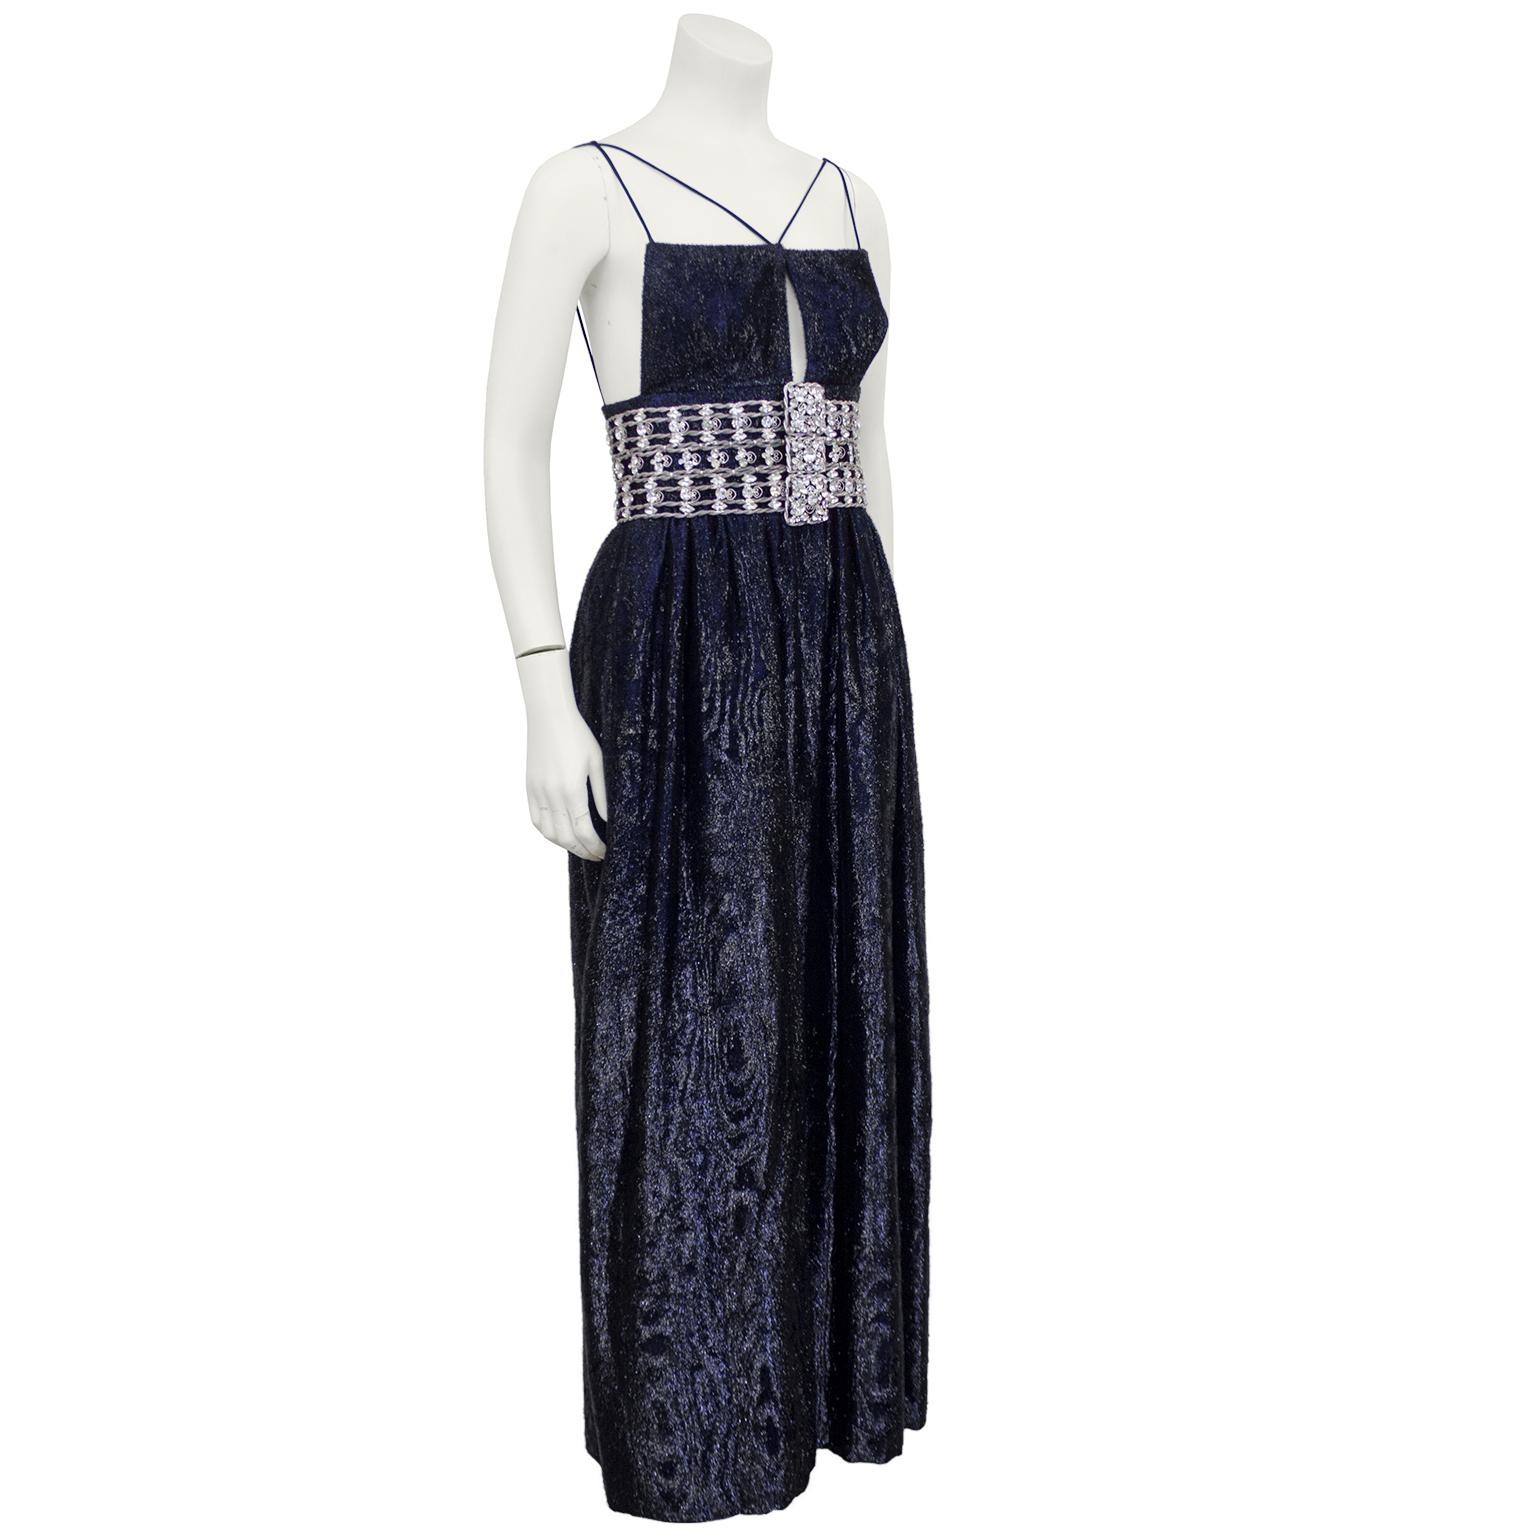 robe Maggy Reeves des années 1970 en velours bleu nuit avec application de guirlandes. Robe demi-couture faite à la main par un couturier canadien. Son souci du détail était légendaire et les accessoires fournis, dans ce cas une ceinture large en